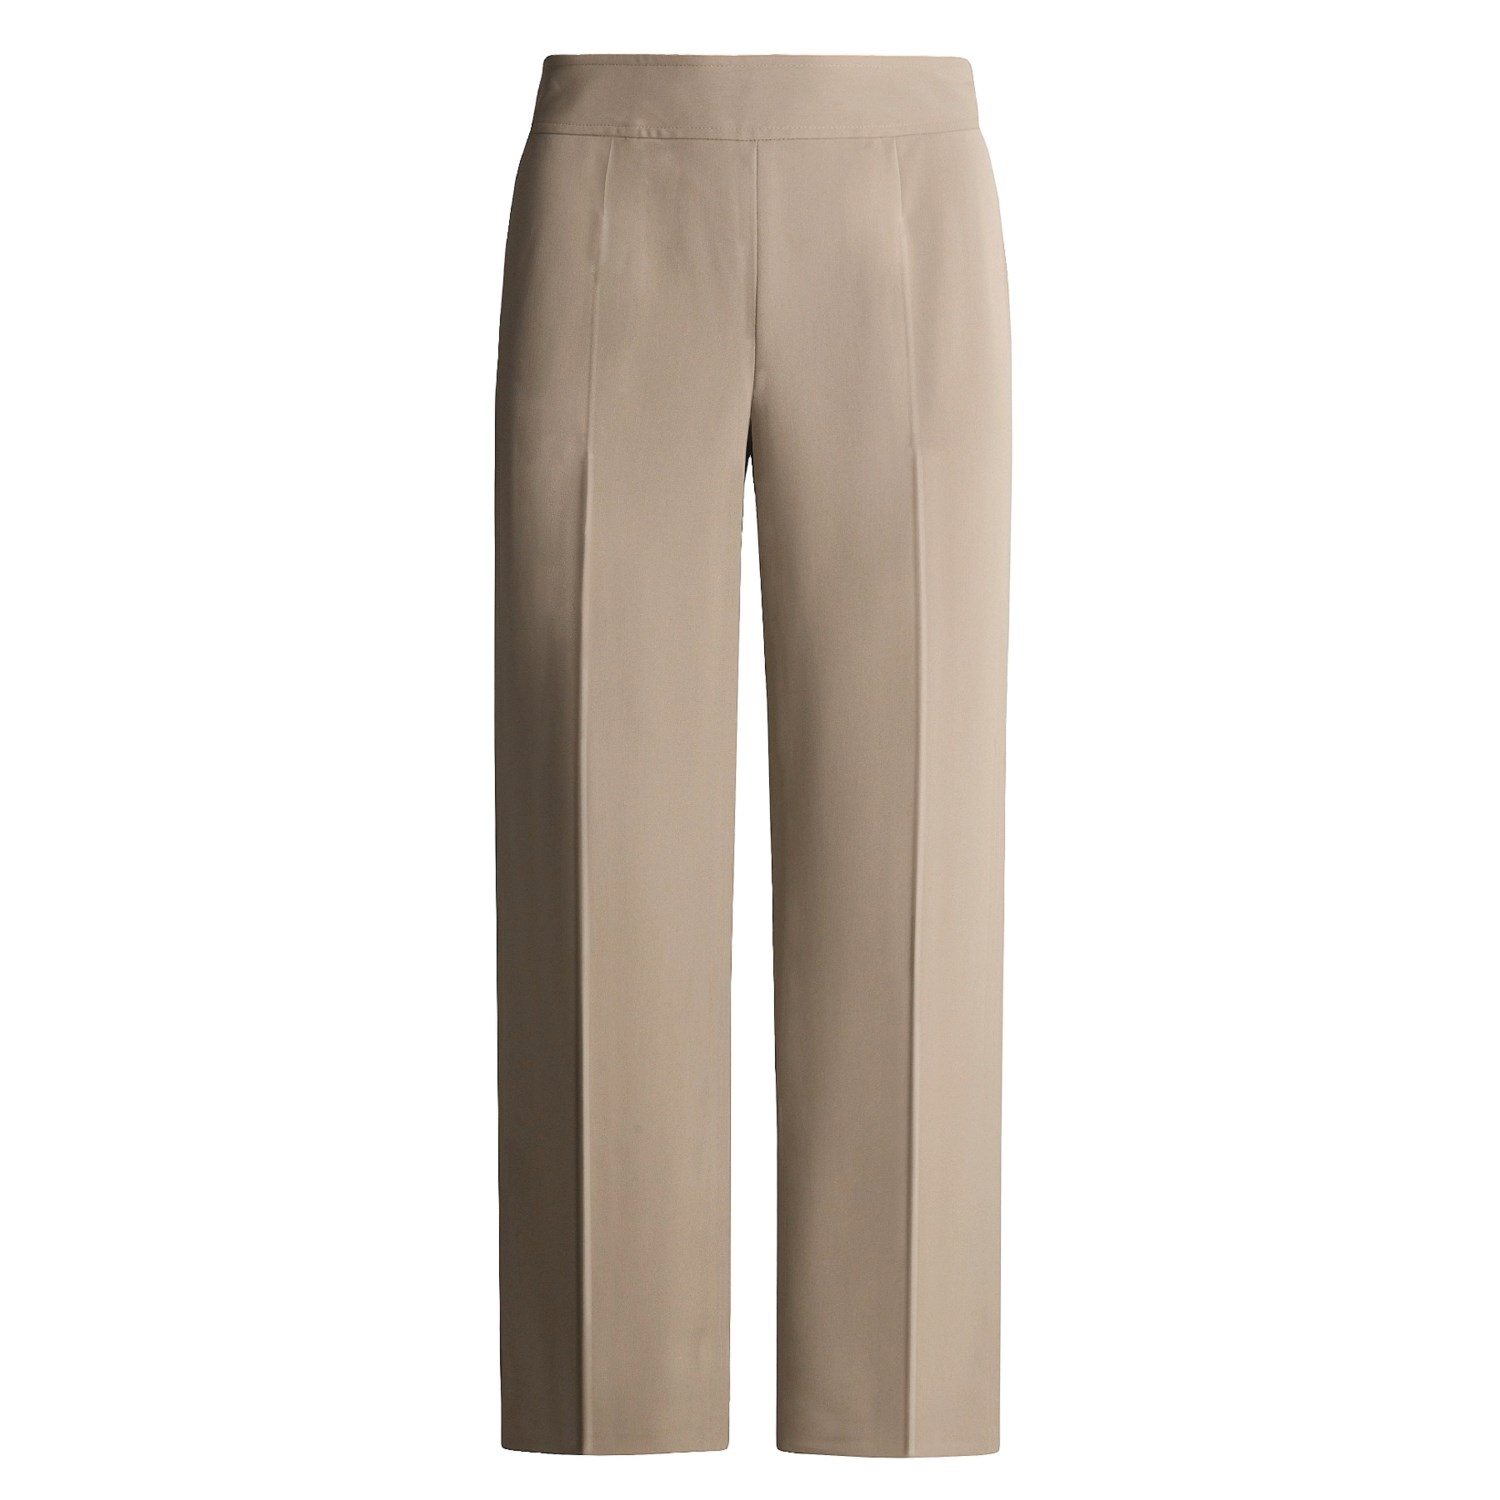 Votre Nom Luxe Microfiber Pants (For Women) 1555W - Save 47%